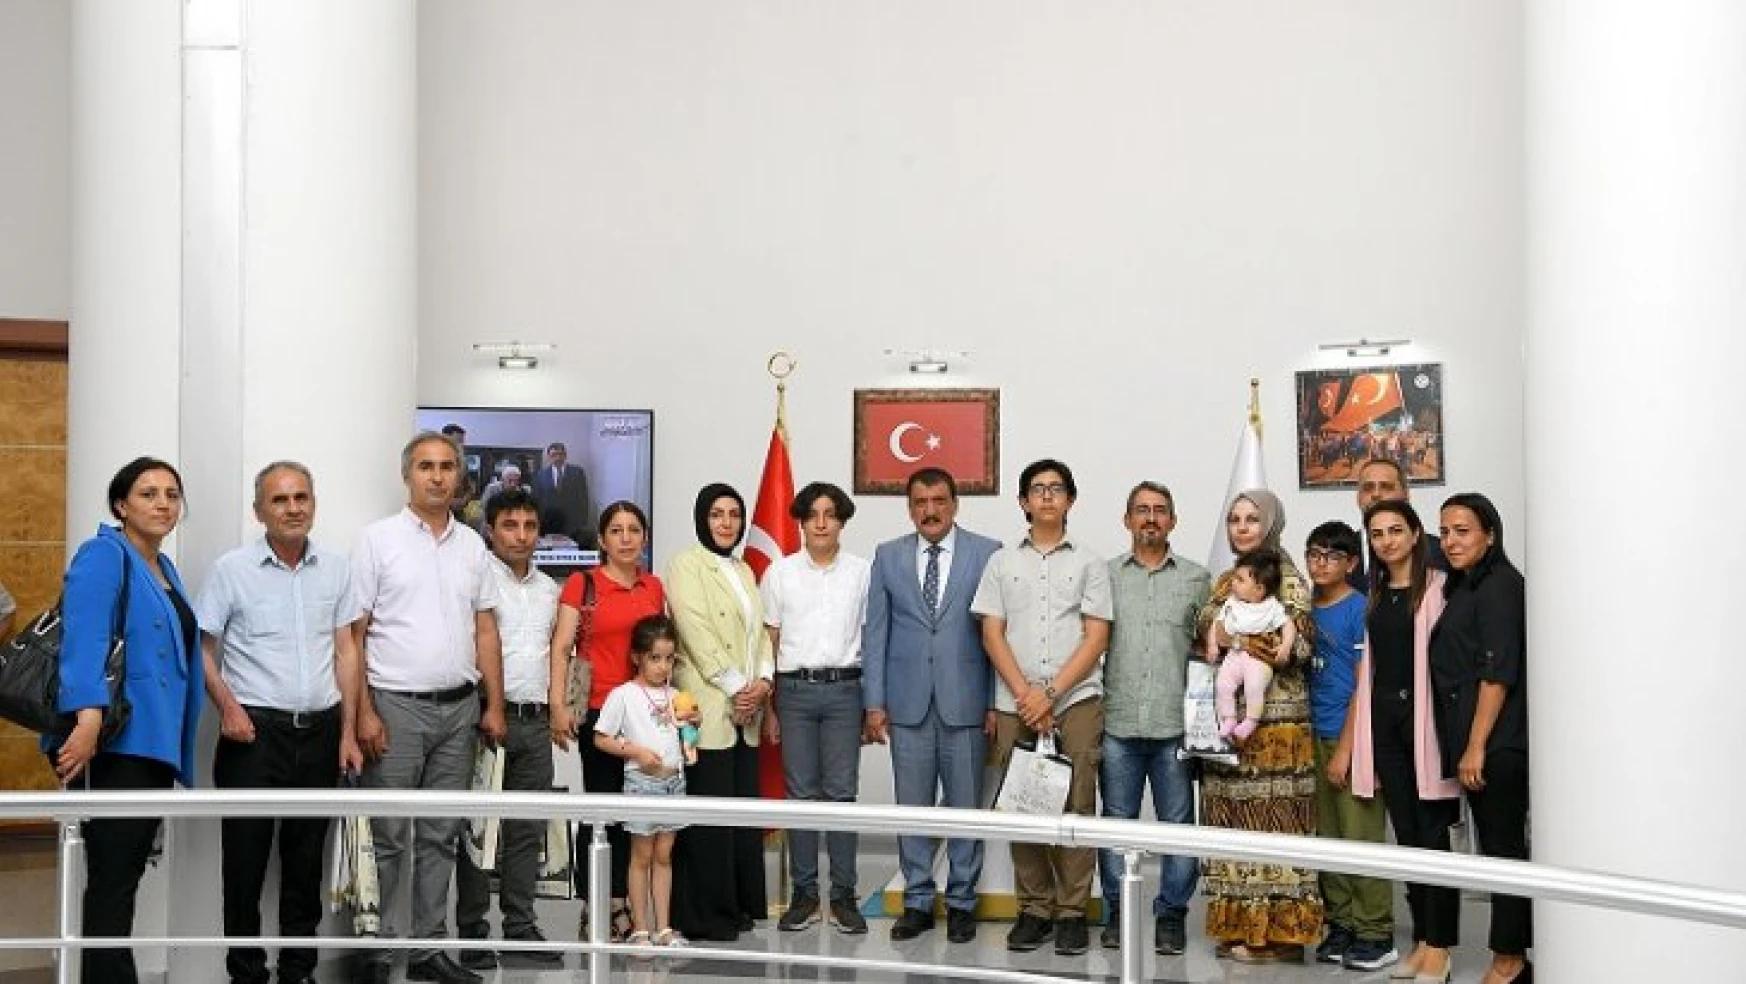 Başarılı Öğrencilerden Başkan Gürkan'a Ziyaret